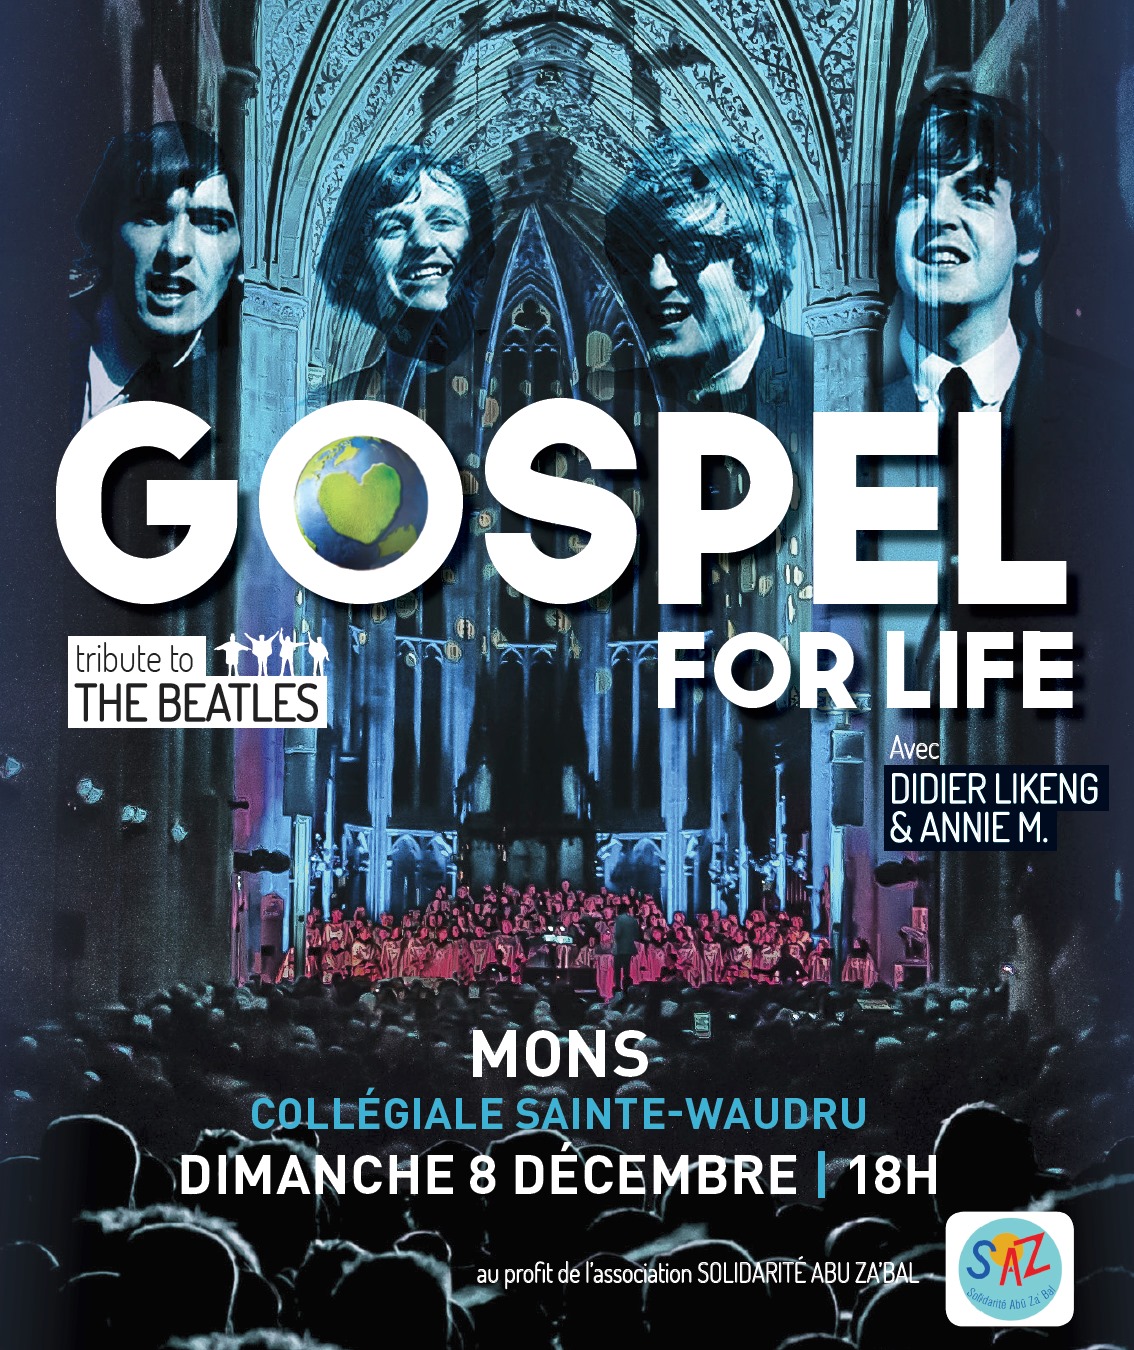 Gospel for life 2019 Mons